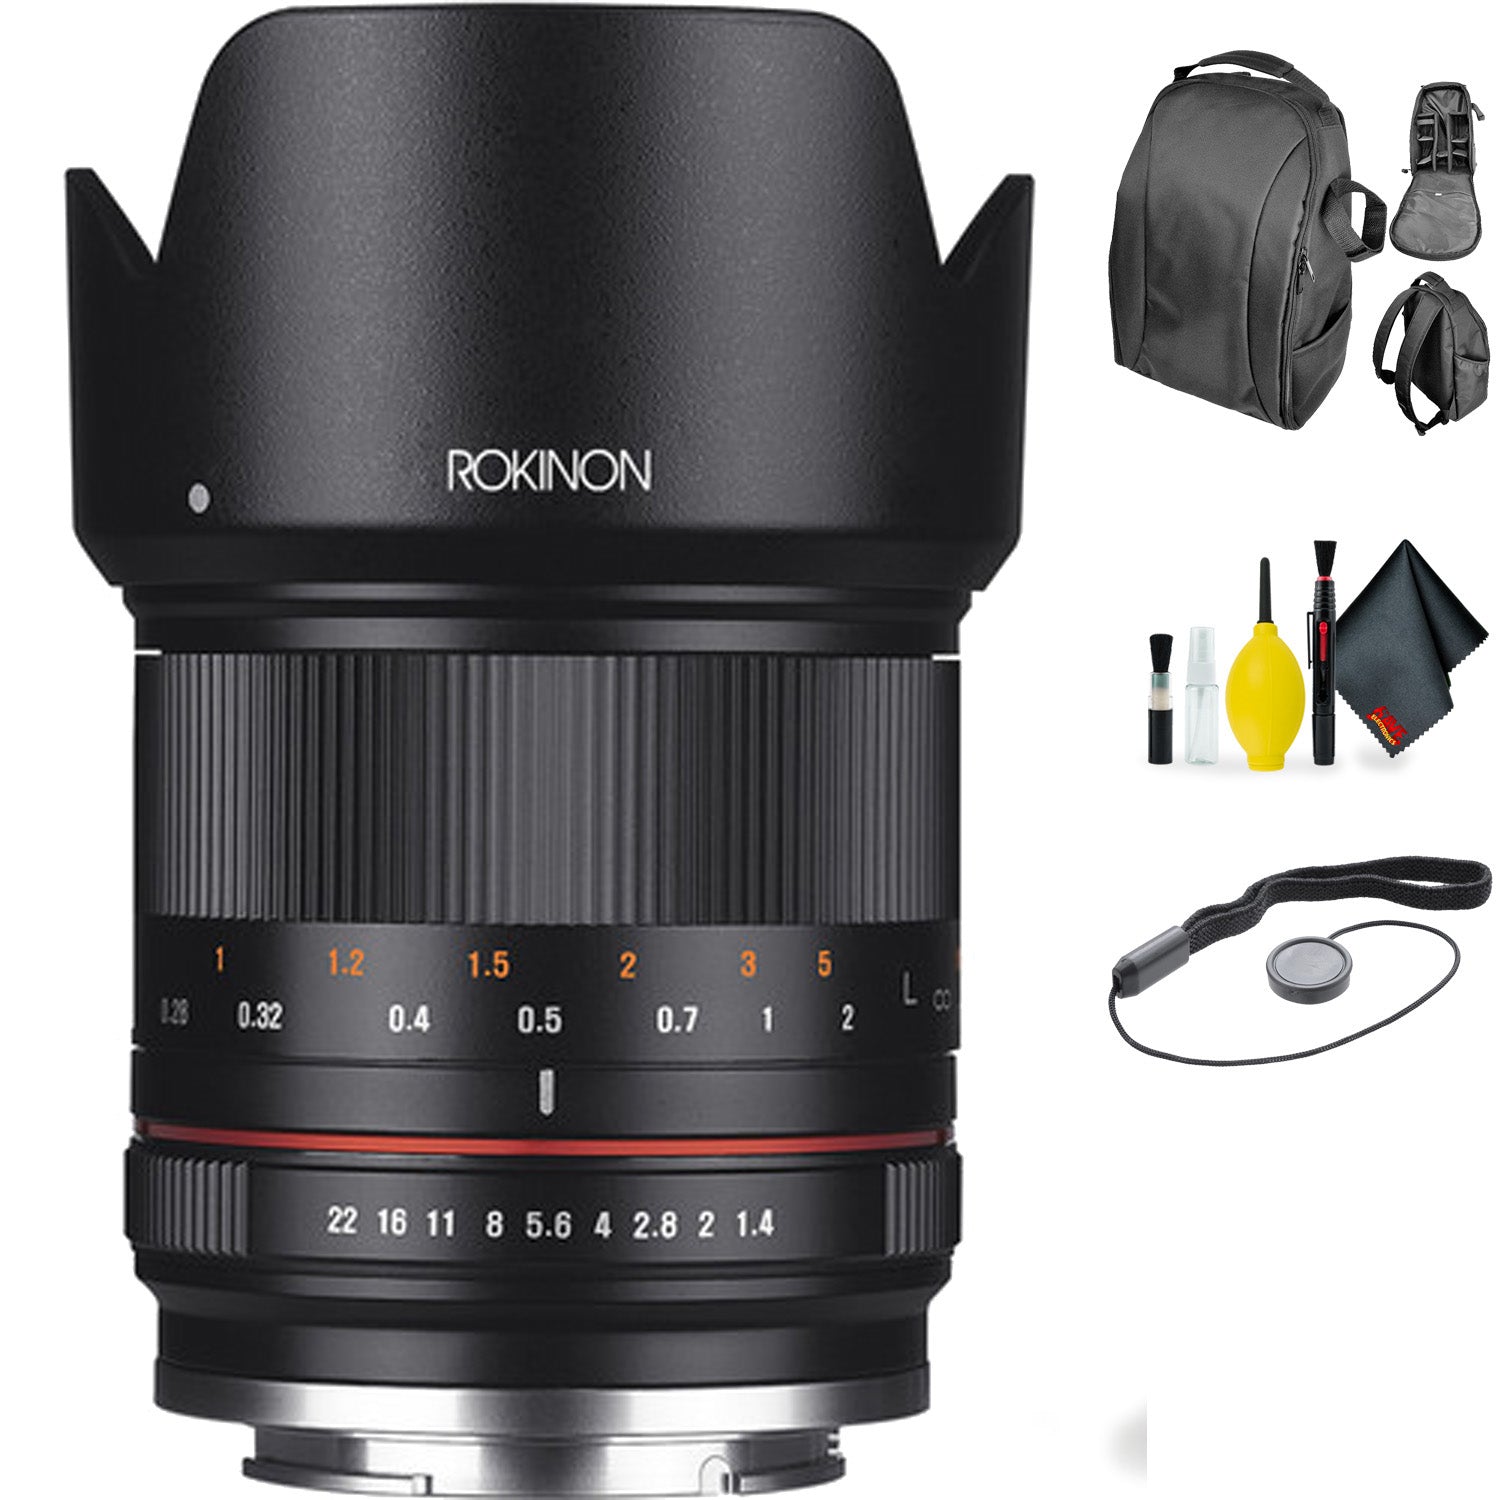 Rokinon 21mm f/1.4 Lens for Fujifilm X (Black) + Deluxe Lens Cleaning Kit